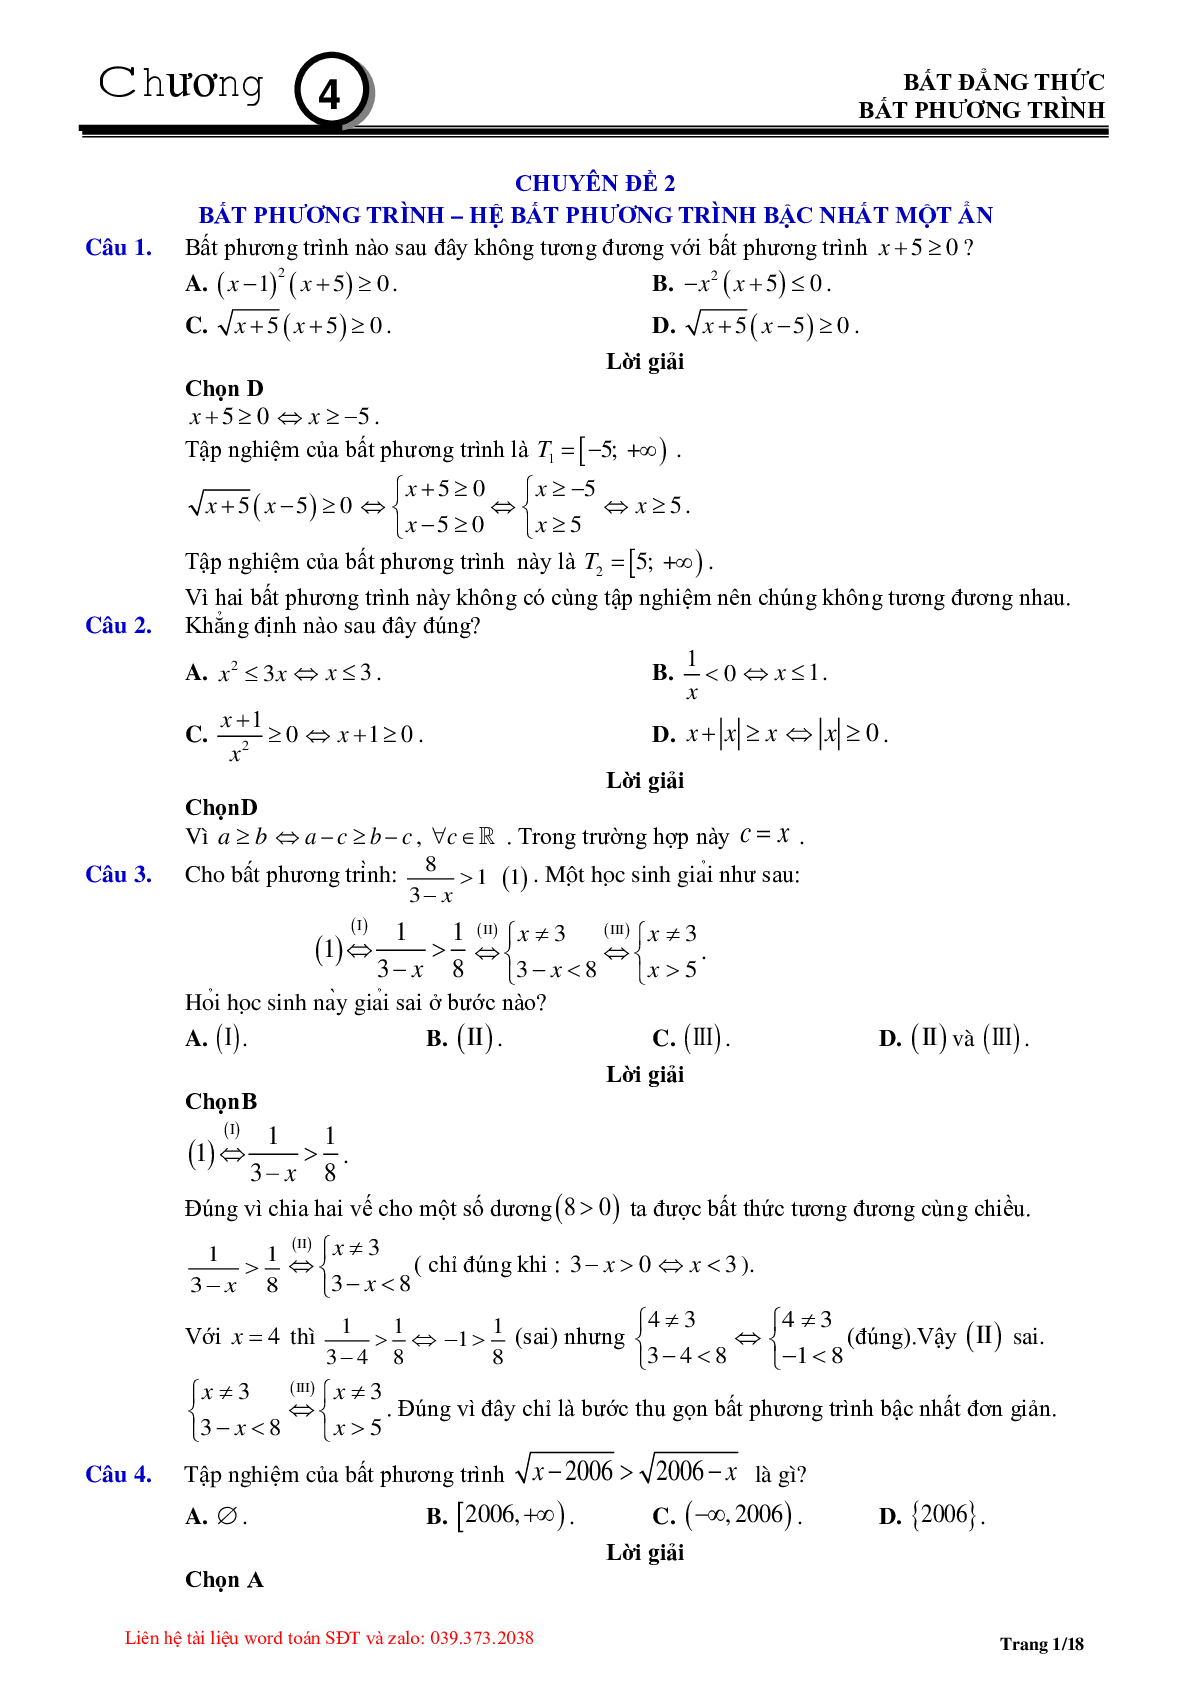 Chuyên đề bất phương trình, hệ bất phương trình bậc nhất (trang 1)